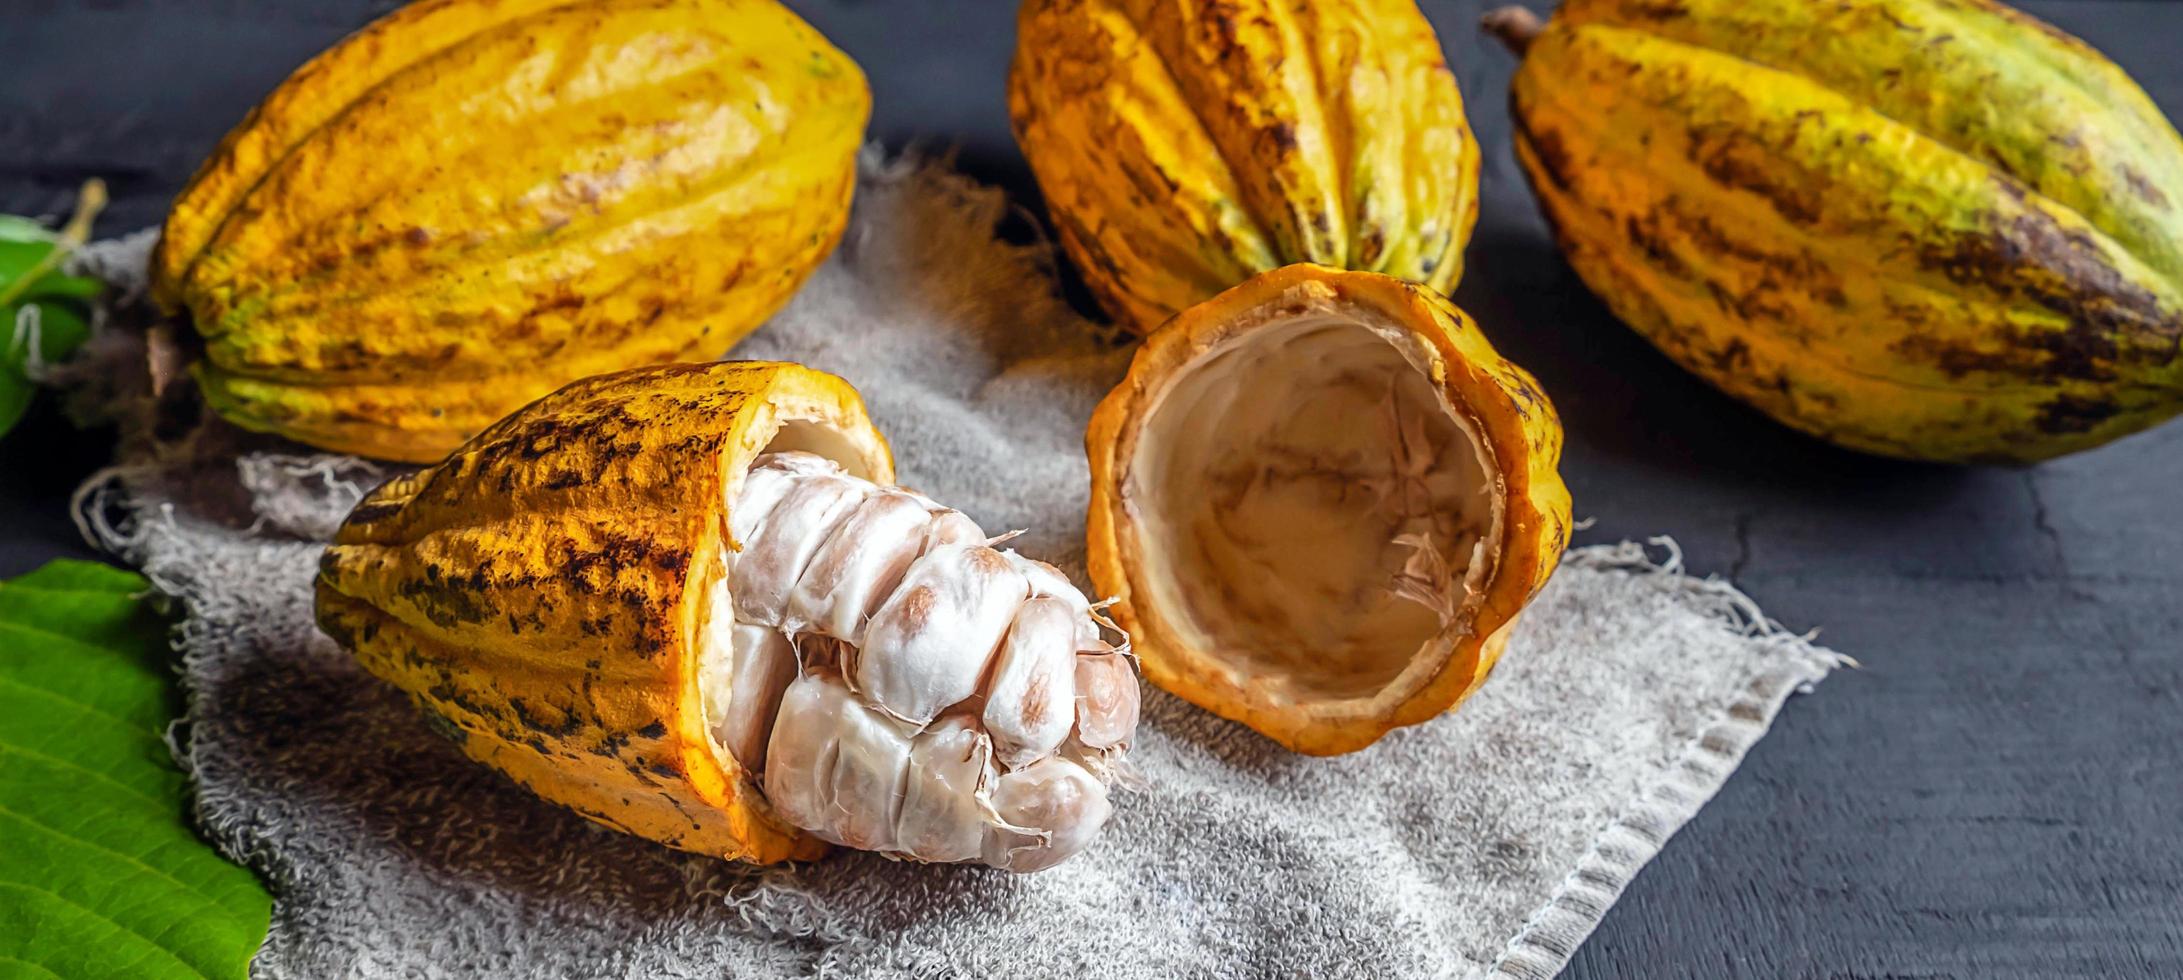 gros plan sur une gousse de cacao jaune mûre fraîche et un fruit de cacao demi-coupé ouvert sur fond noir photo